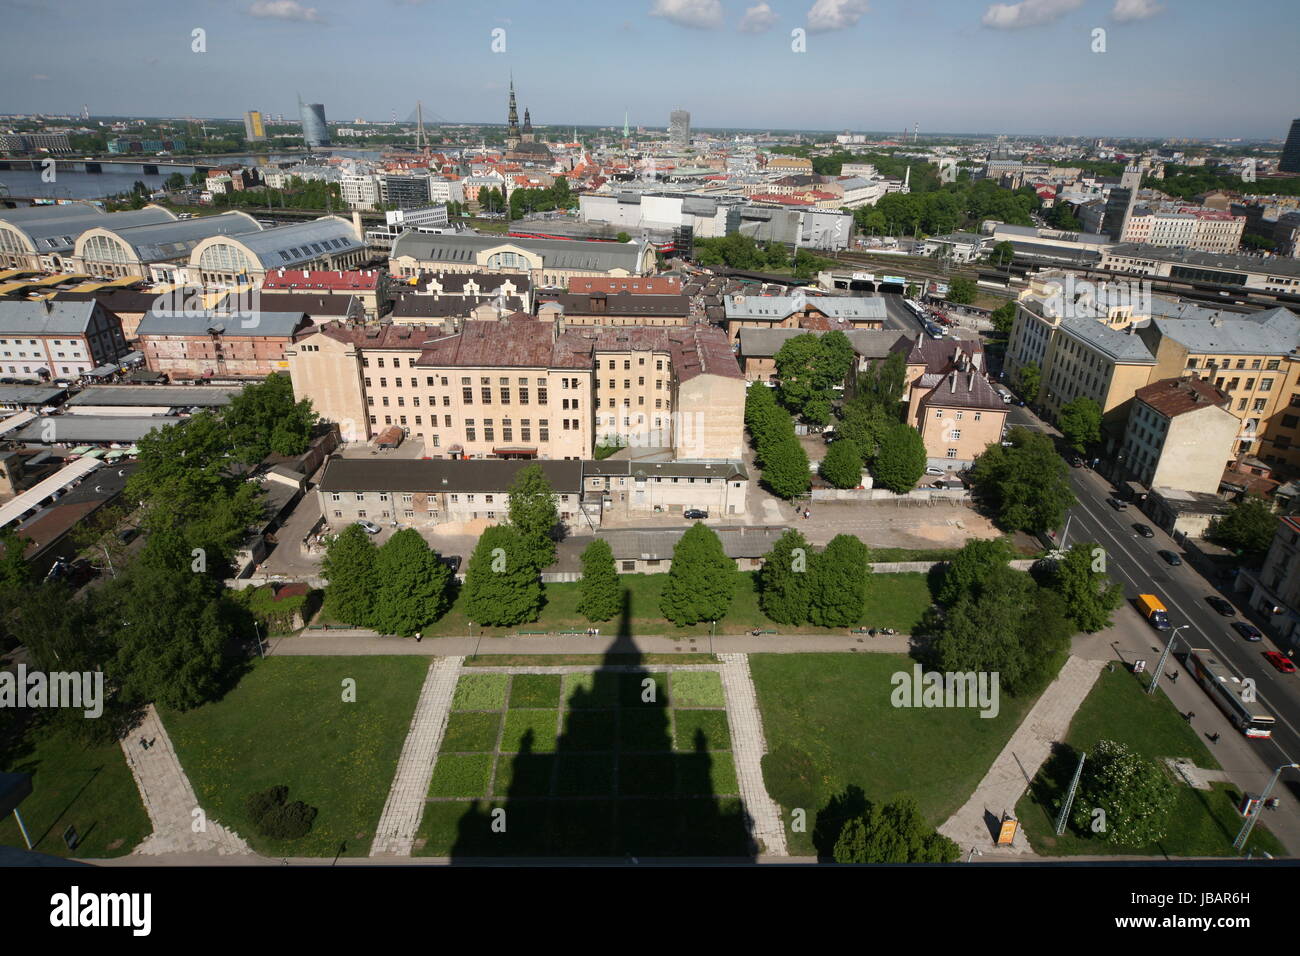 Die Altstadt von Riga aus Sicht der Aussichtsterasse des Sozialistischen Hochhaus Akademie der Wissenschaften im Stadtteil poco Mosca in Riga, Lettland Foto Stock